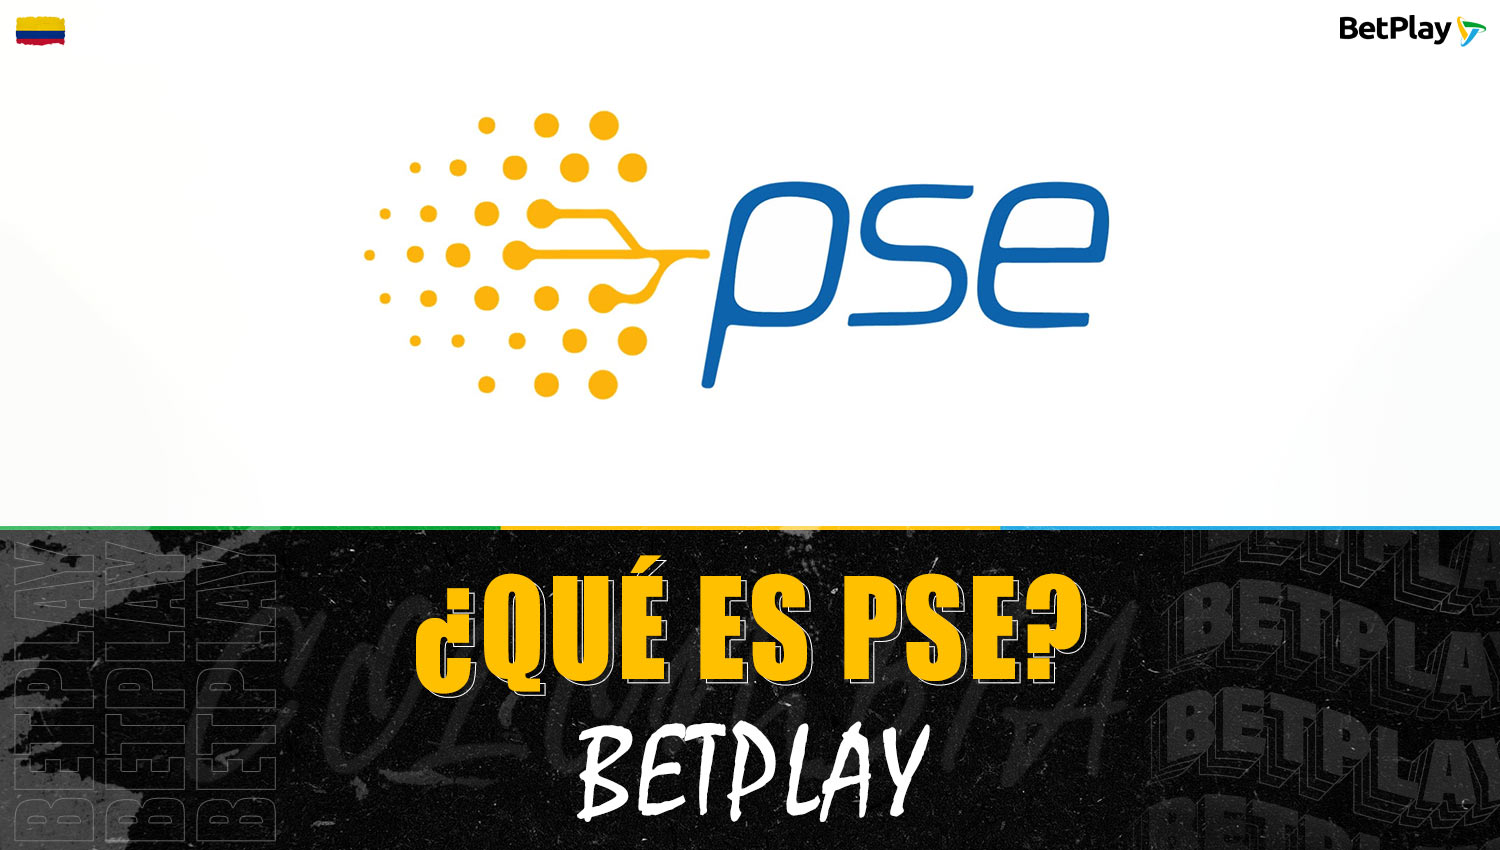 Información detallada sobre el método de pago en línea "PSE" en la plataforma Betplay